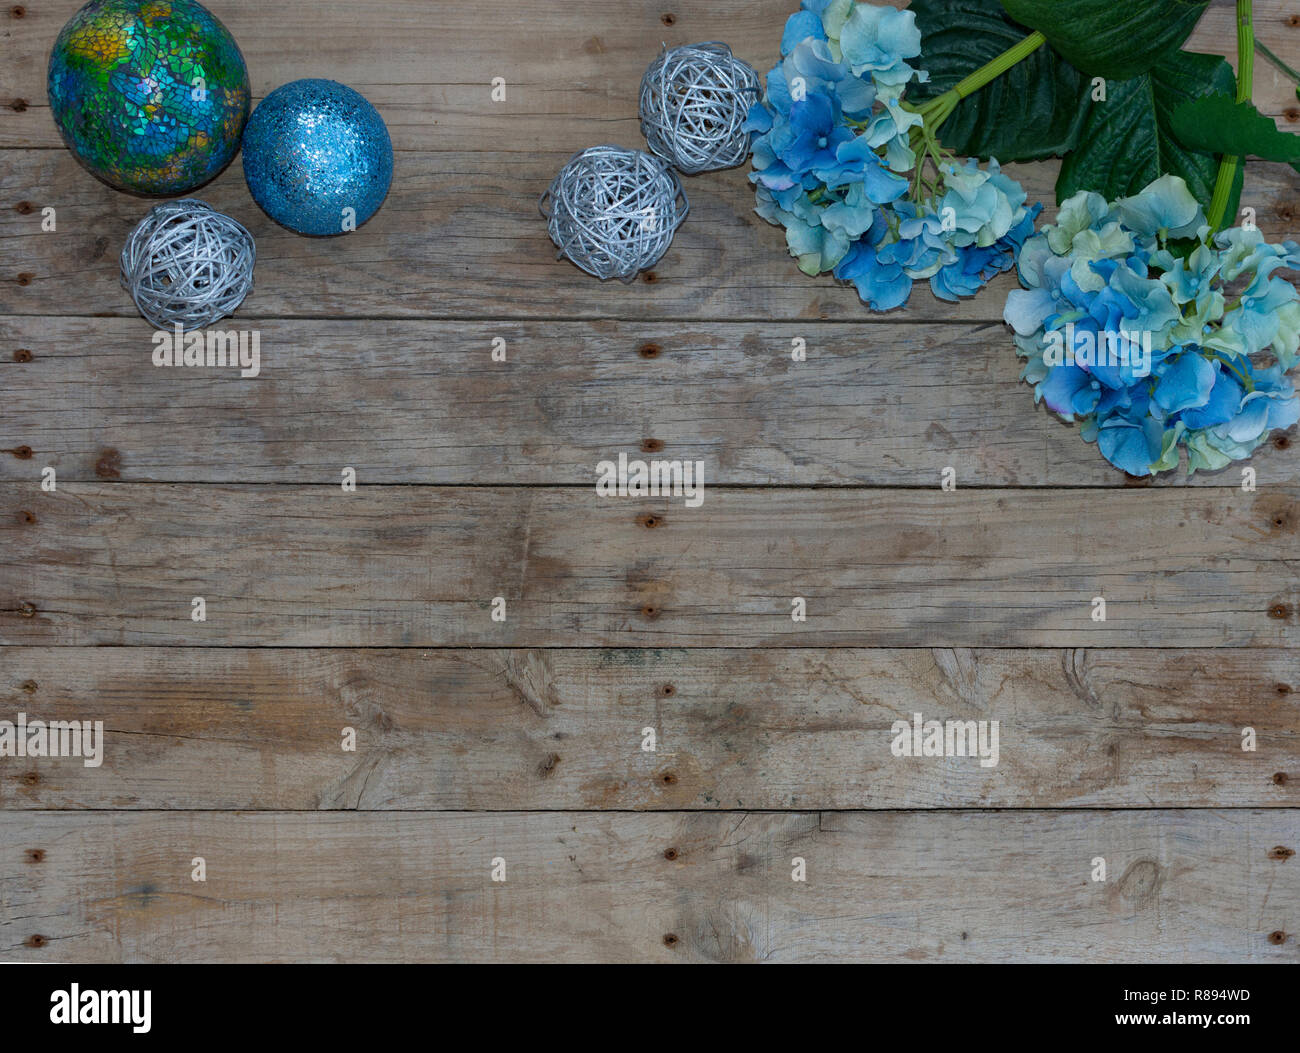 Weihnachten Postkarte Rahmen mit whit Holz Hintergrund. Für die Grußkarte. Xmas Wallpaper, Blau glitter Kugeln und Türkis Blumen. Stockfoto